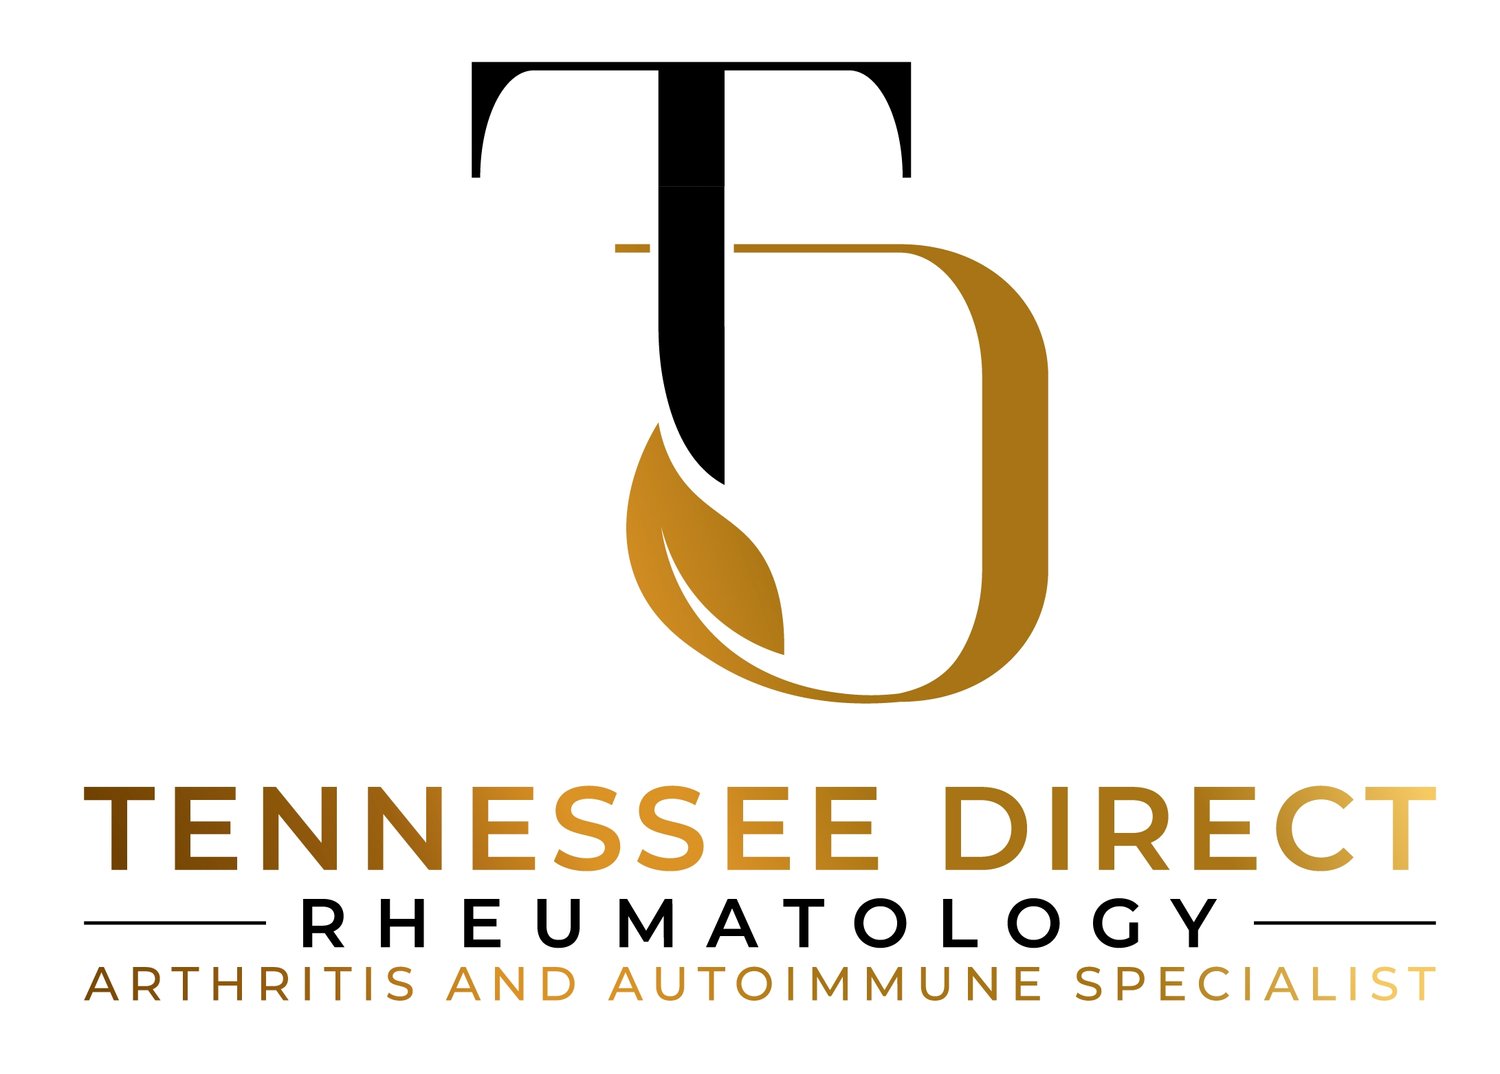 Tennessee Direct Rheumatology